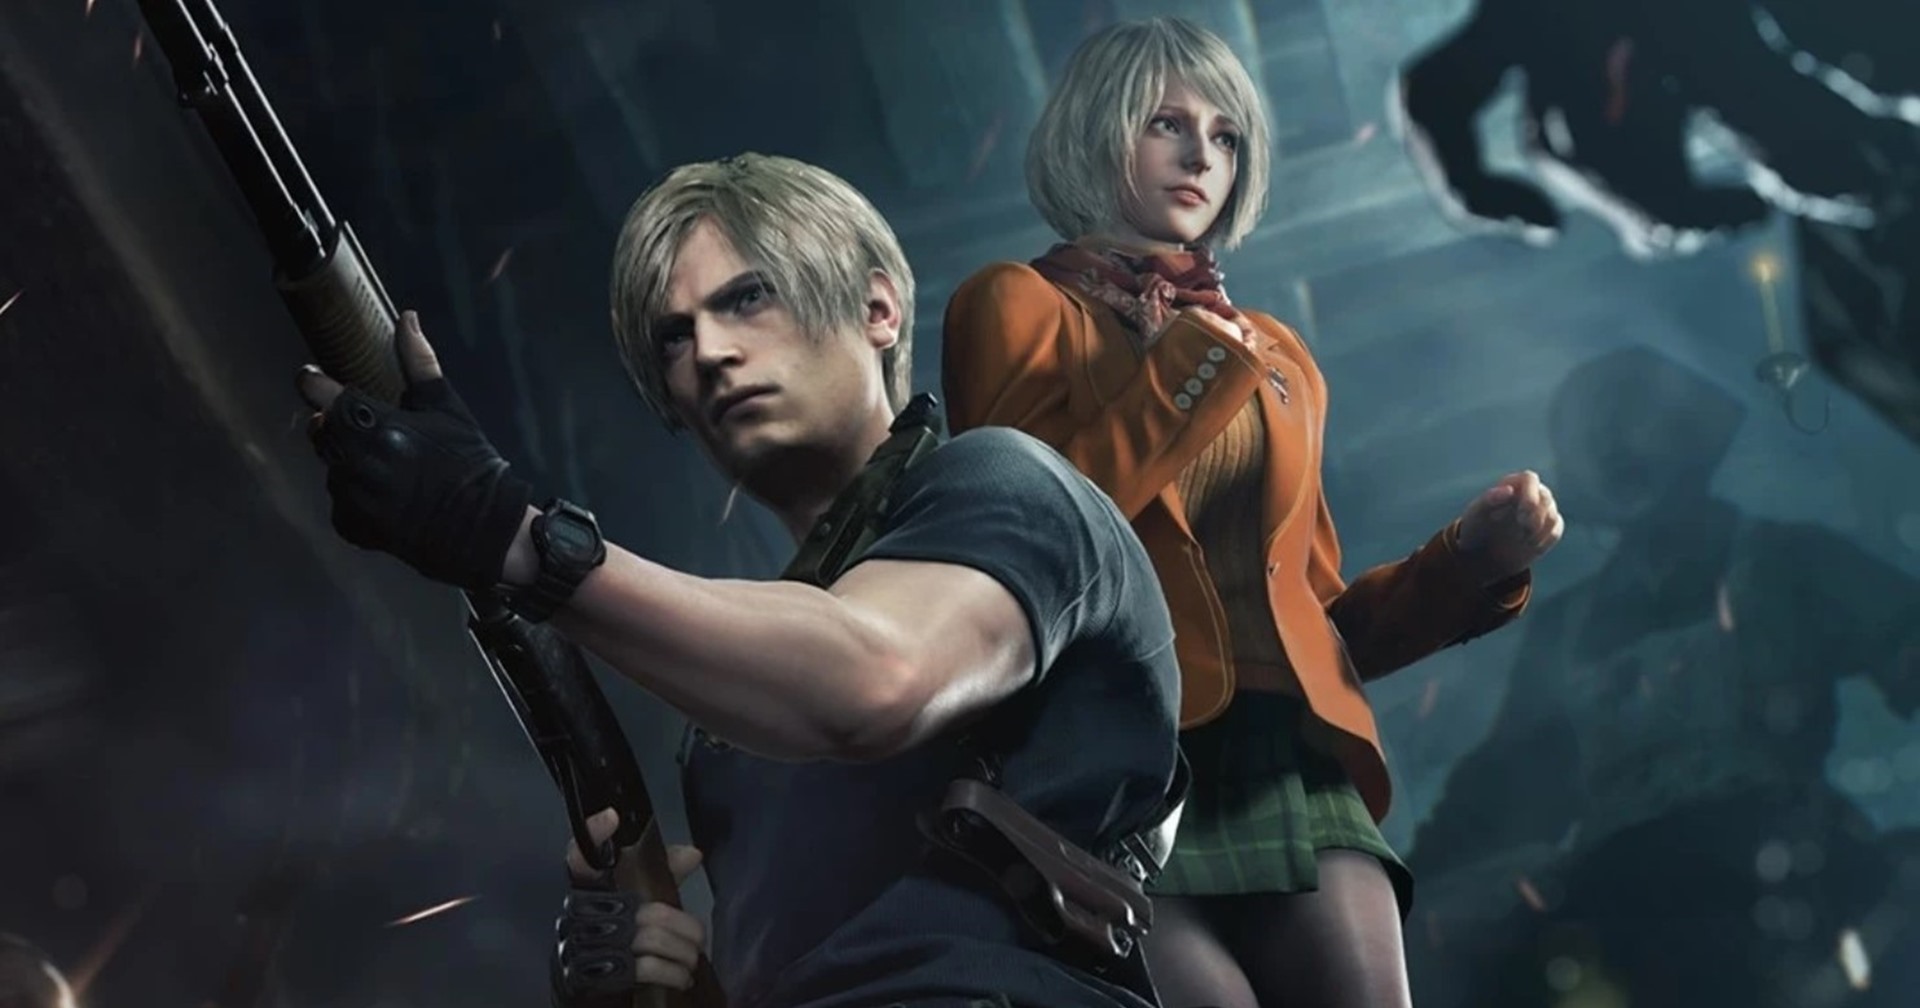 เกม Resident Evil 4 Remake ทำให้หุ้นของ Capcom พุ่งสูงสุดในประวัติศาสตร์ของค่าย